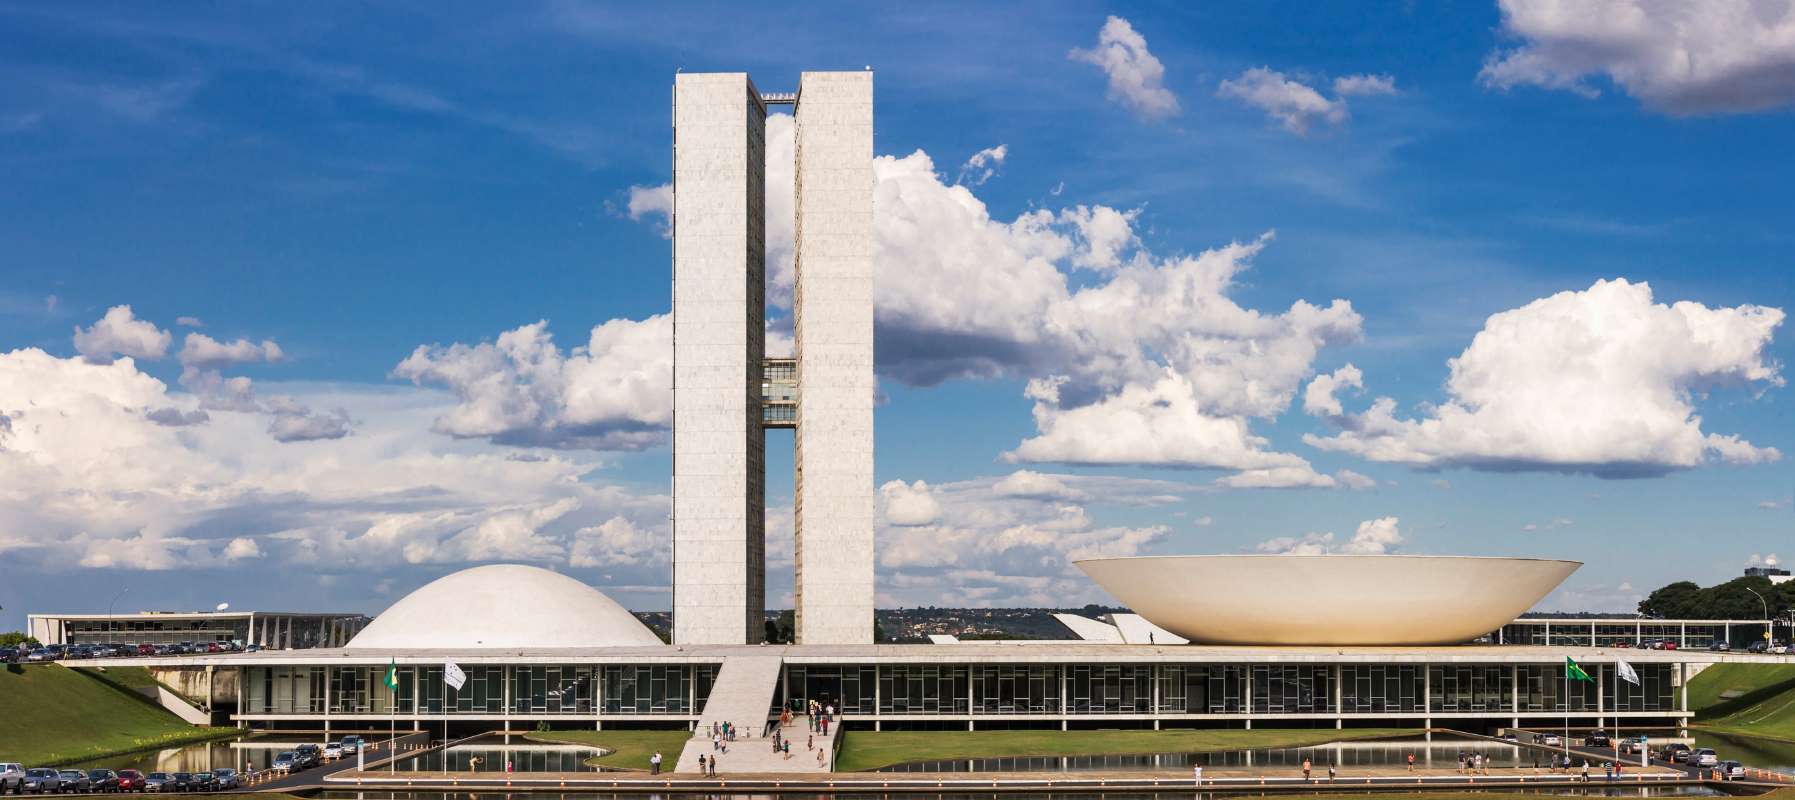 Brazília fővárosa, Brazíliaváros a kongresszus épületével